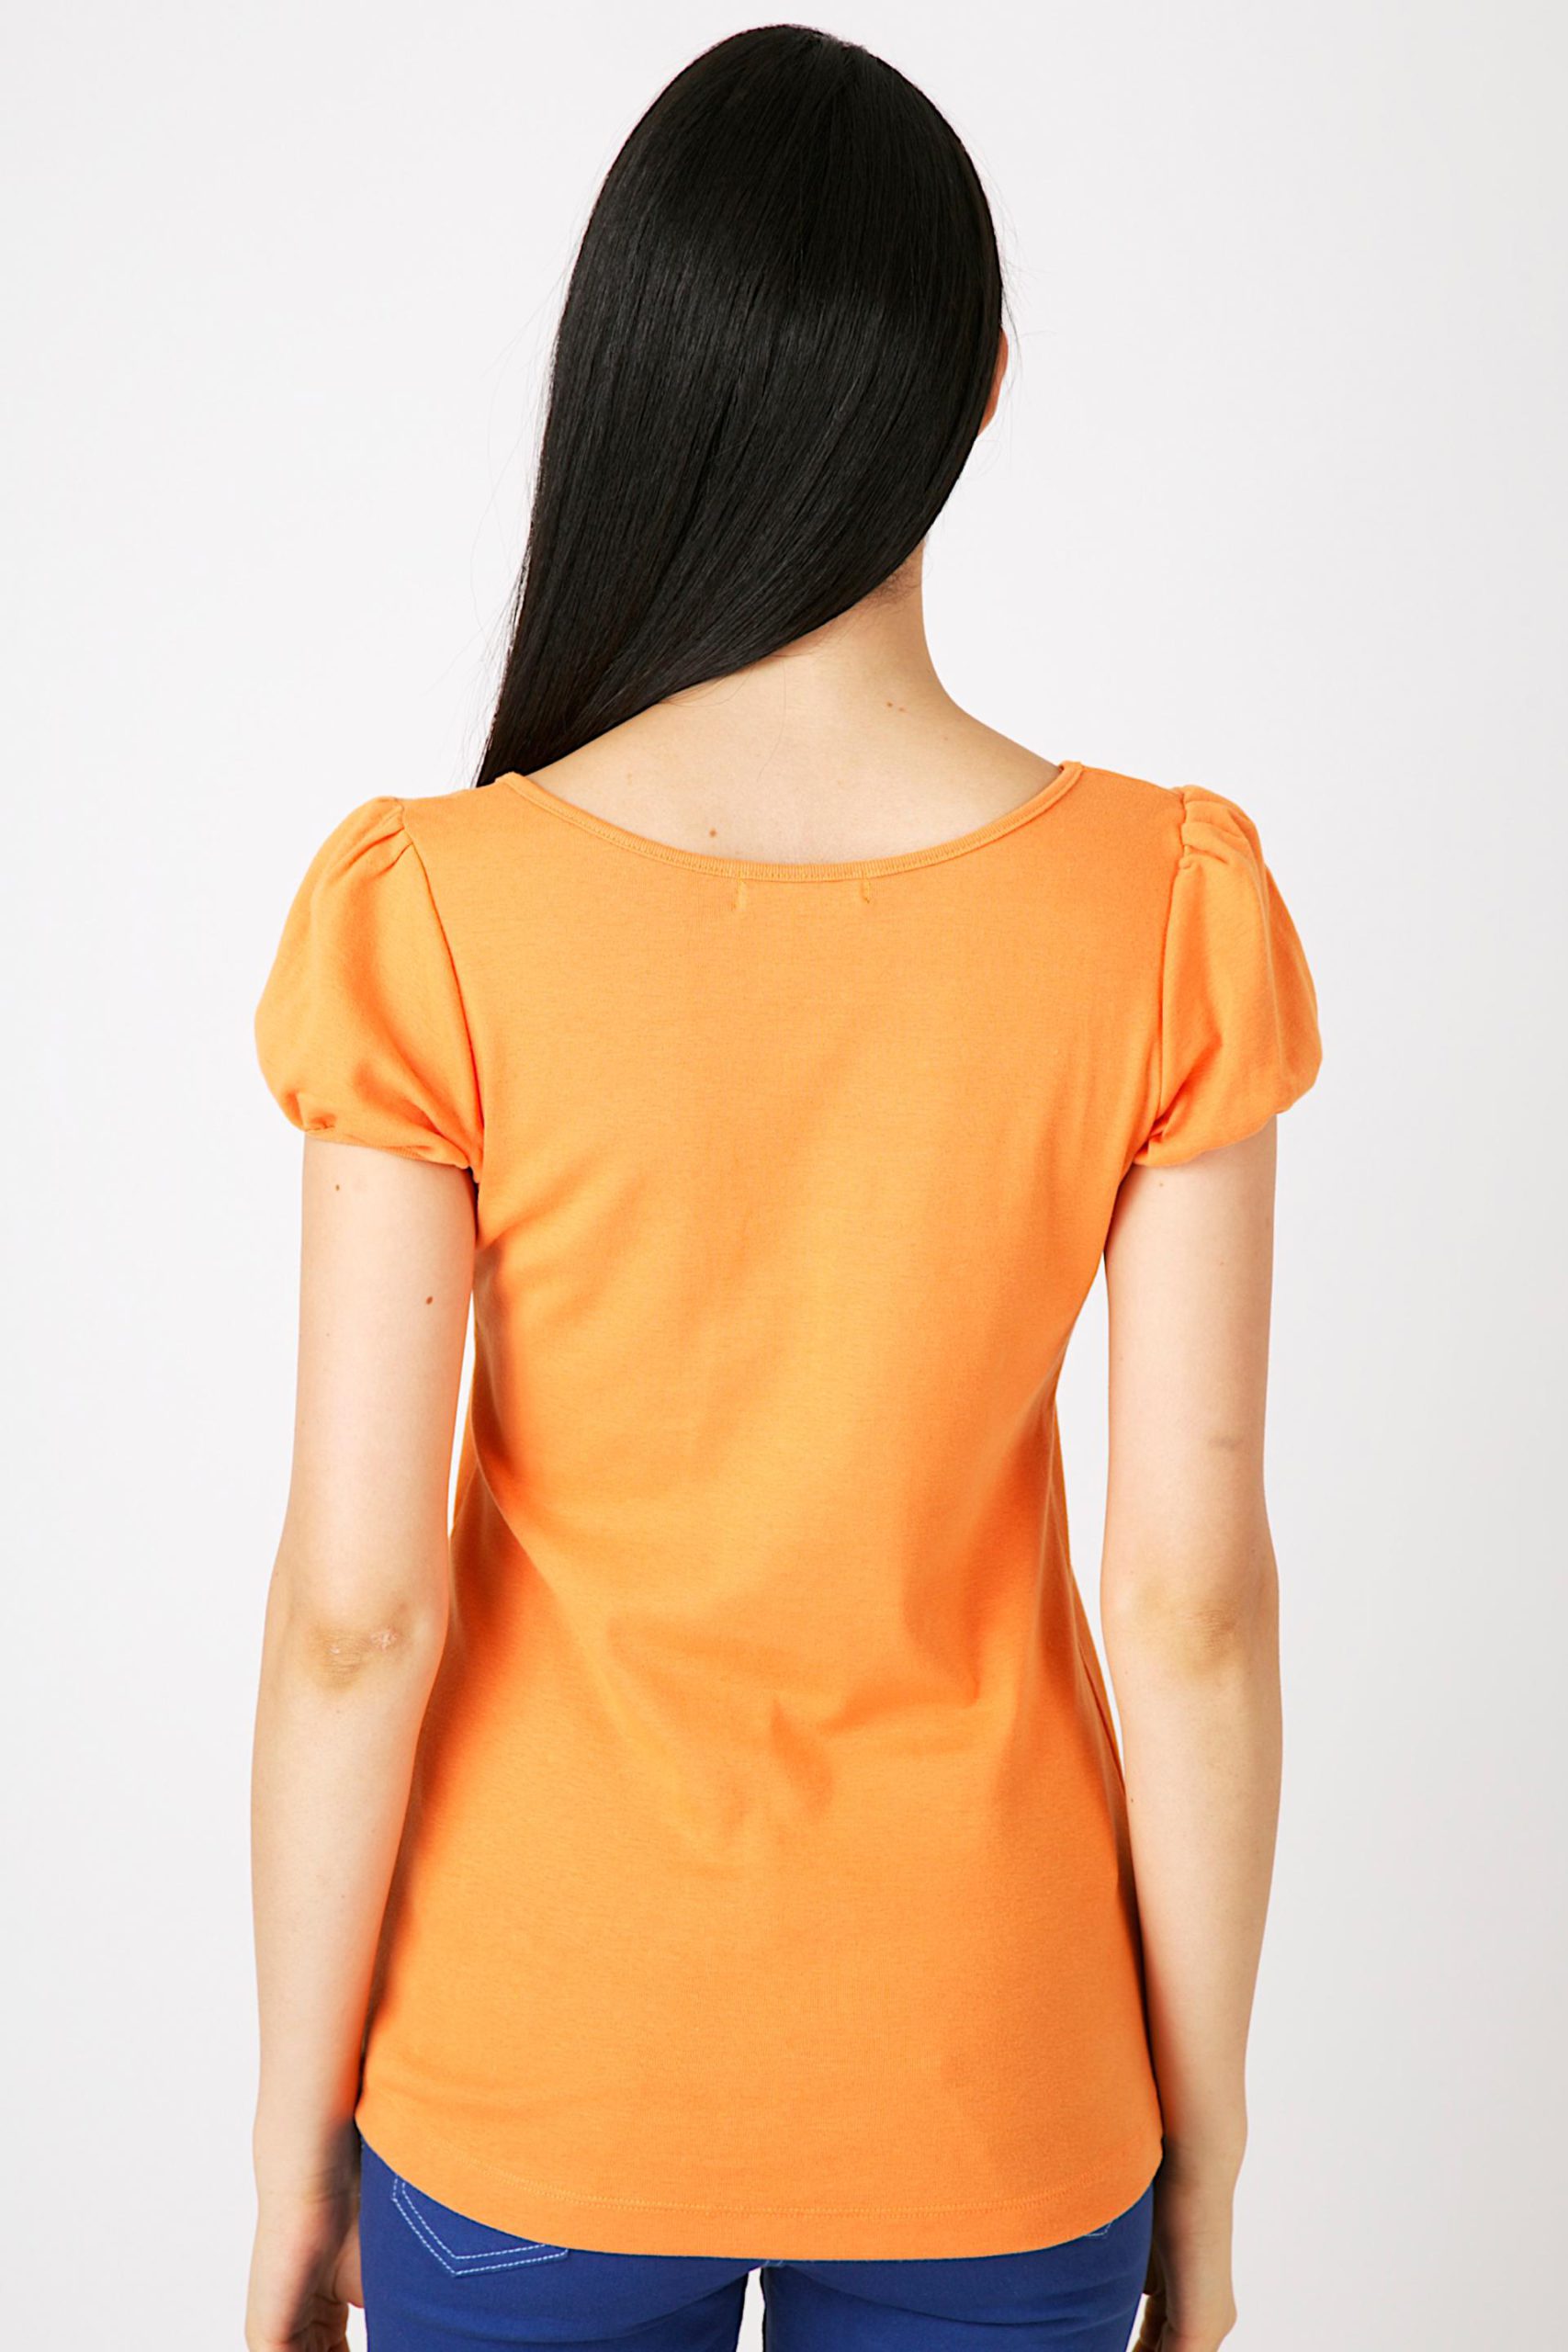 เสื้อยืดผ้าริบ คอยูแขนตุ๊กตา สีส้มอ่อน (2)